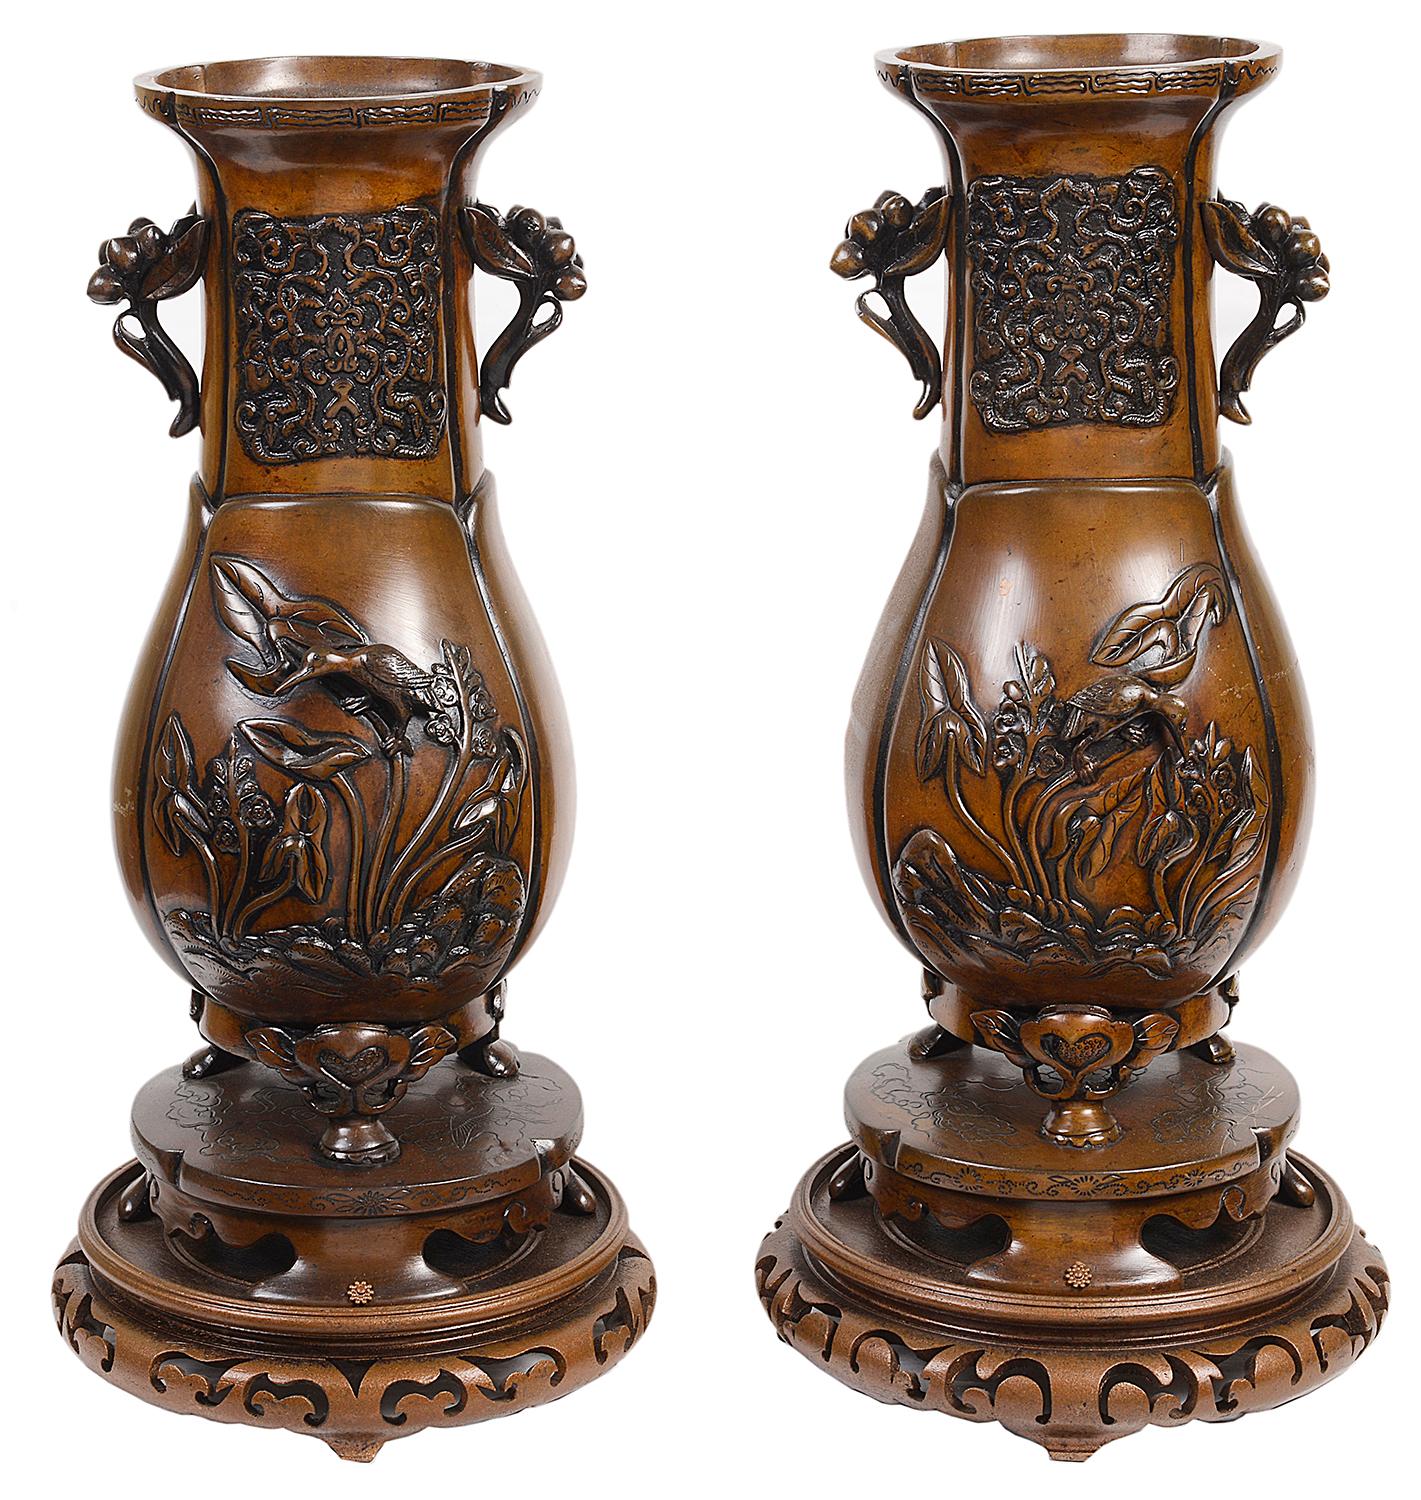 Paire de vases japonais en bronze de bonne qualité du XIXe siècle, chacun avec un relief de fleurs et d'oiseaux, montés sur des supports en bronze et en bois sculpté.